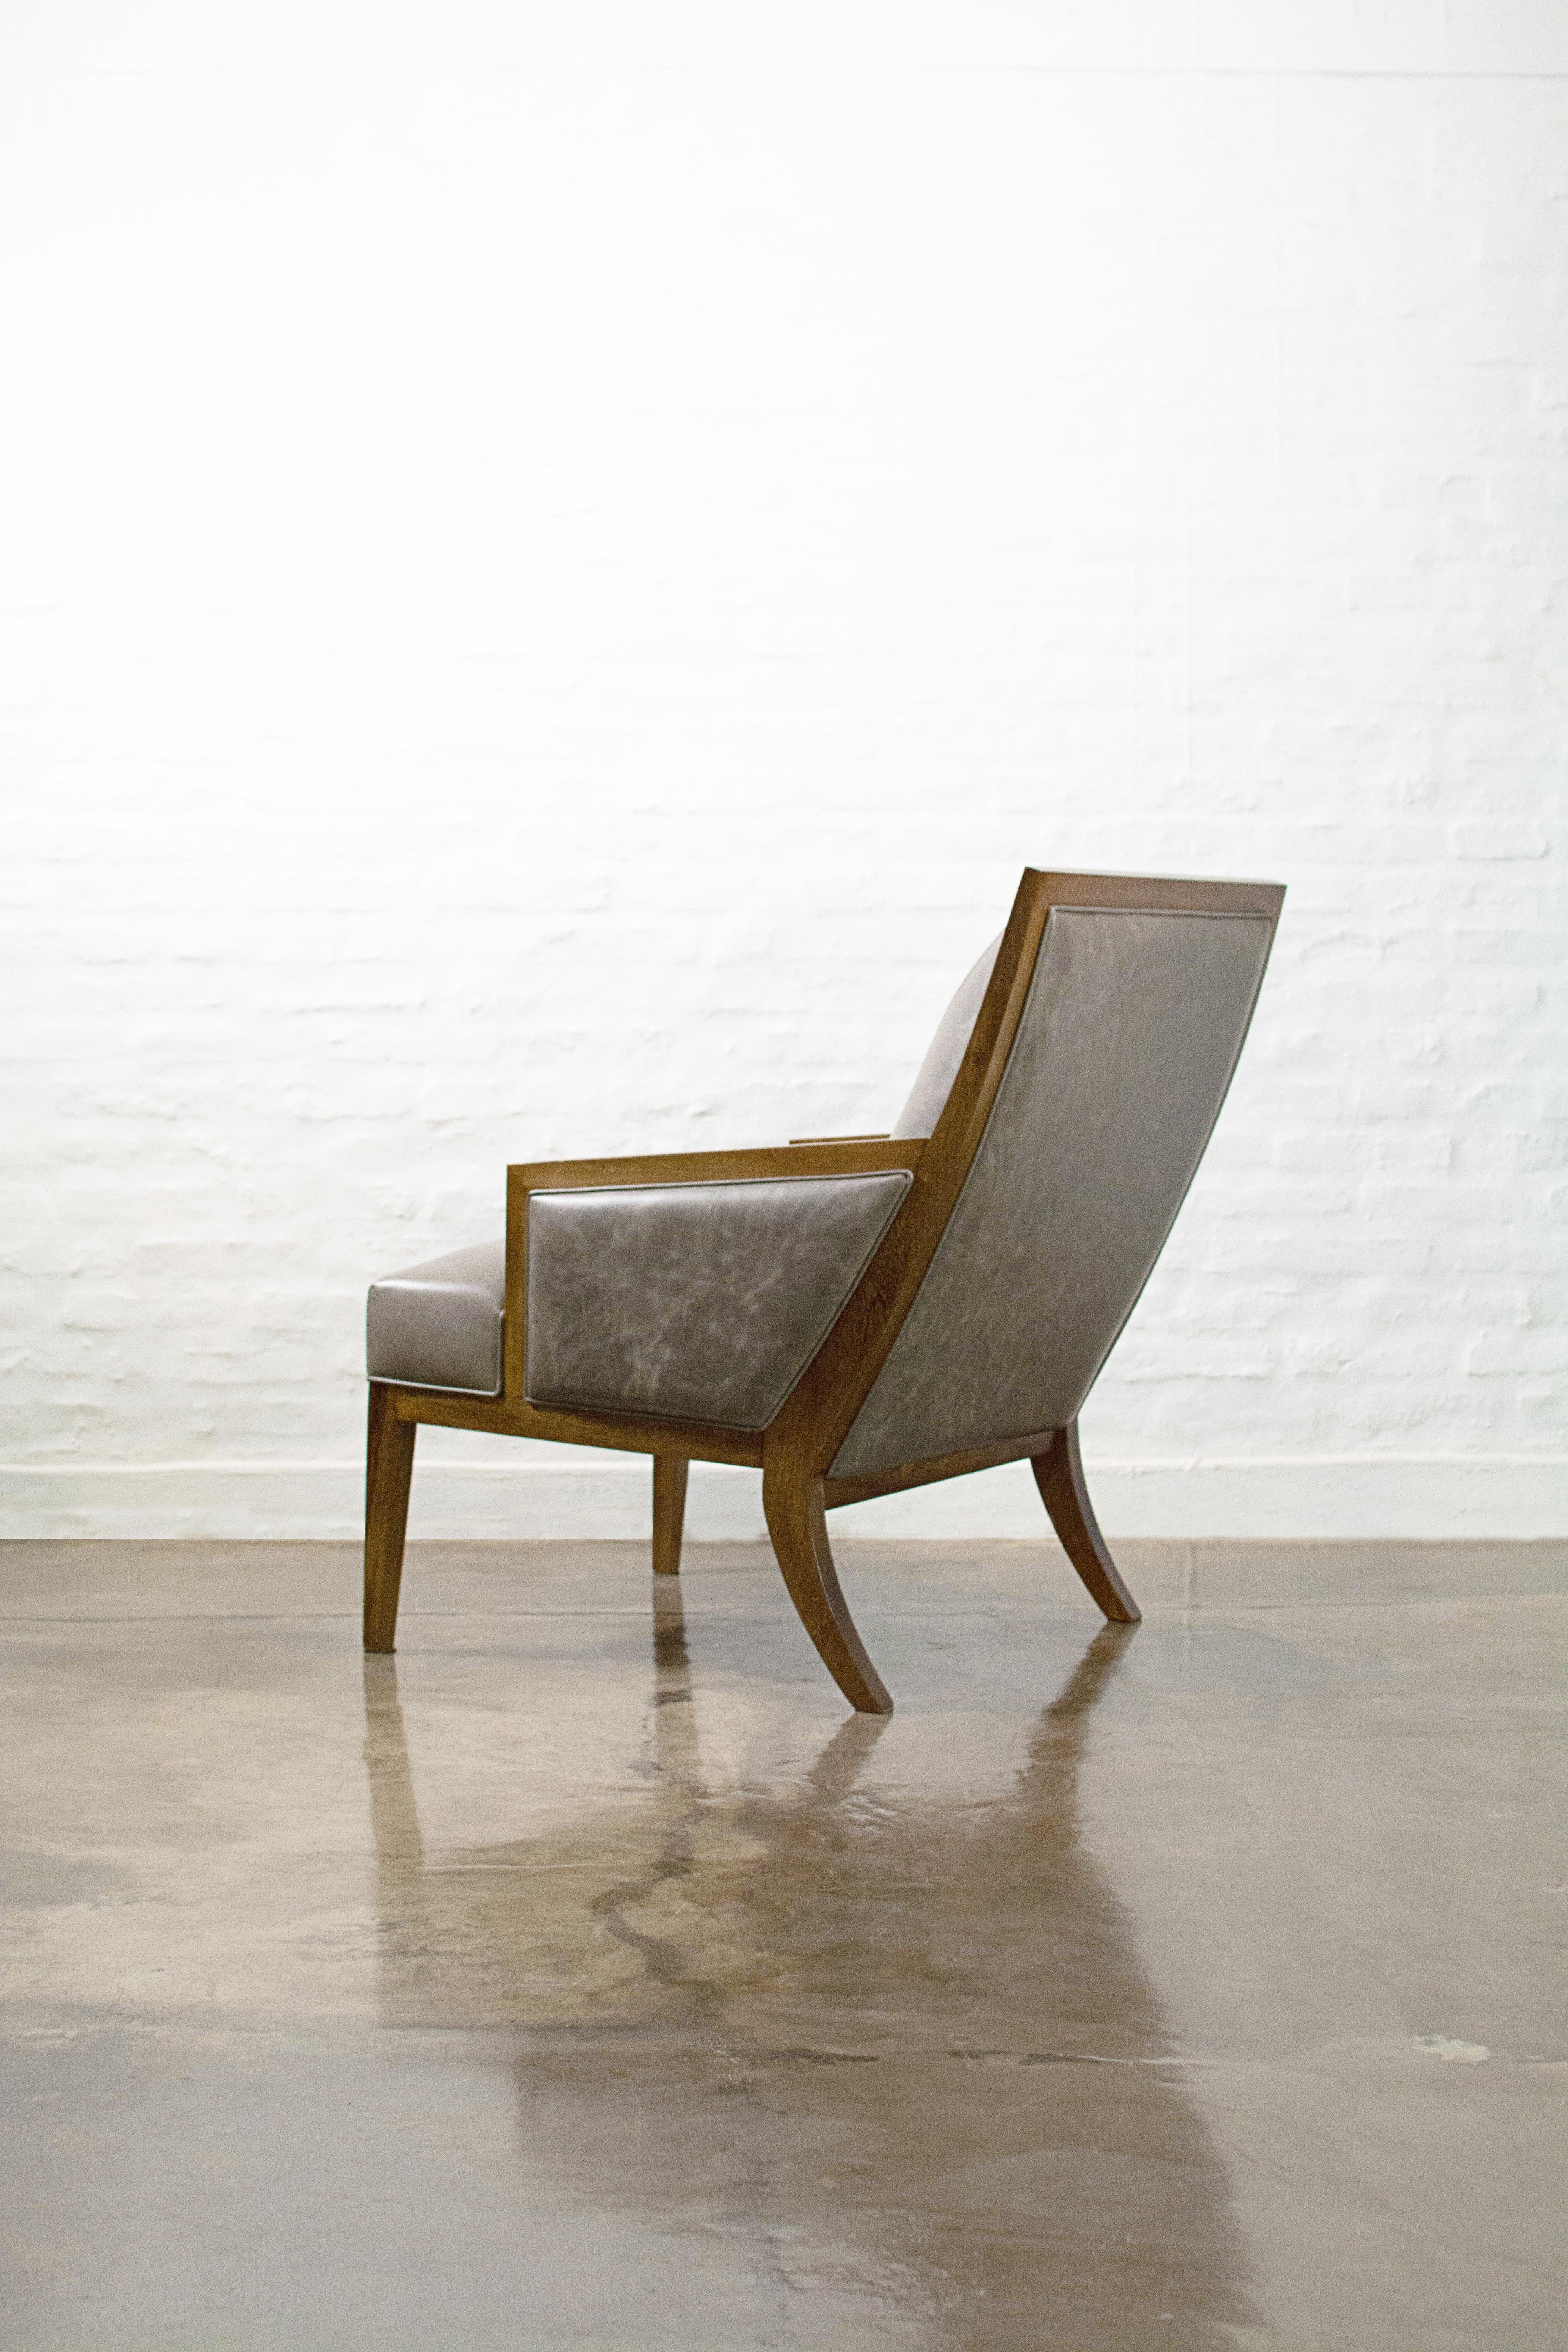 La chaise longue Belgrano s'inspire du design moderniste du milieu du XXe siècle et présente un design ergonomique qui peut être personnalisé à l'aide de coussins d'appoint. Elle est ornée d'une piqûre décorative qui s'étend du coin supérieur de la